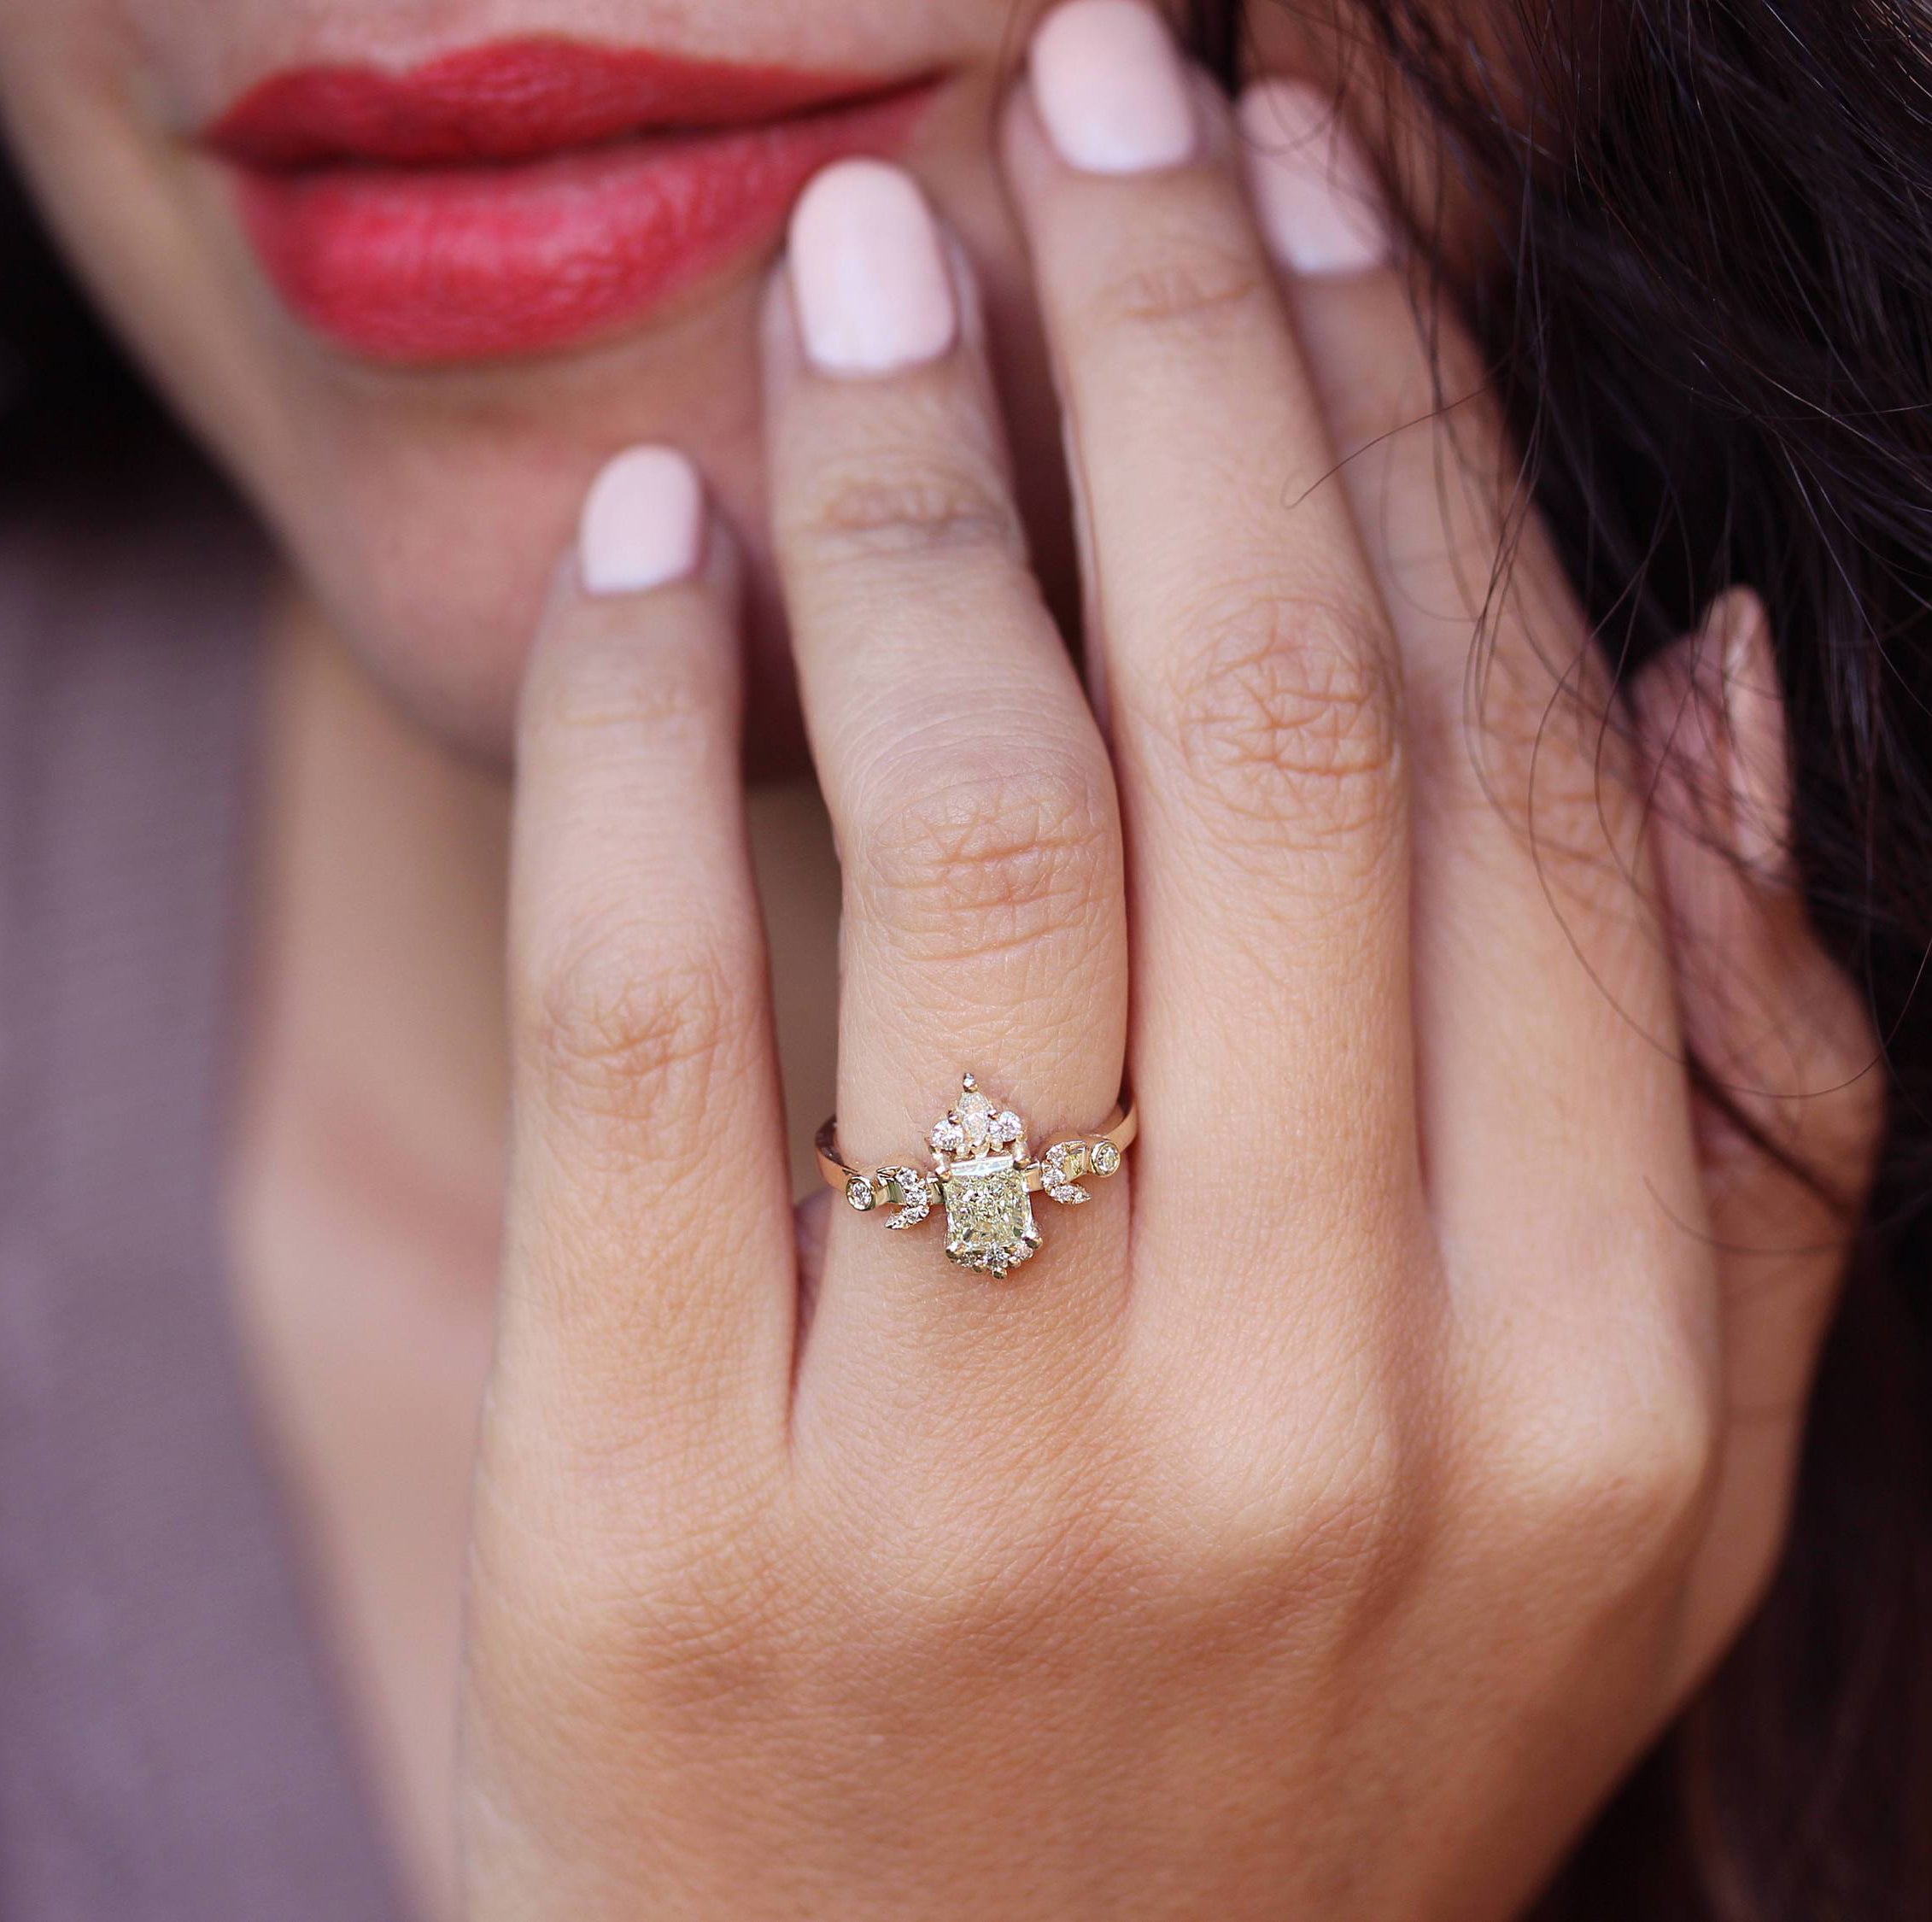 Hindi Moon phase Square Princess Cut Diamond Engagement Ring